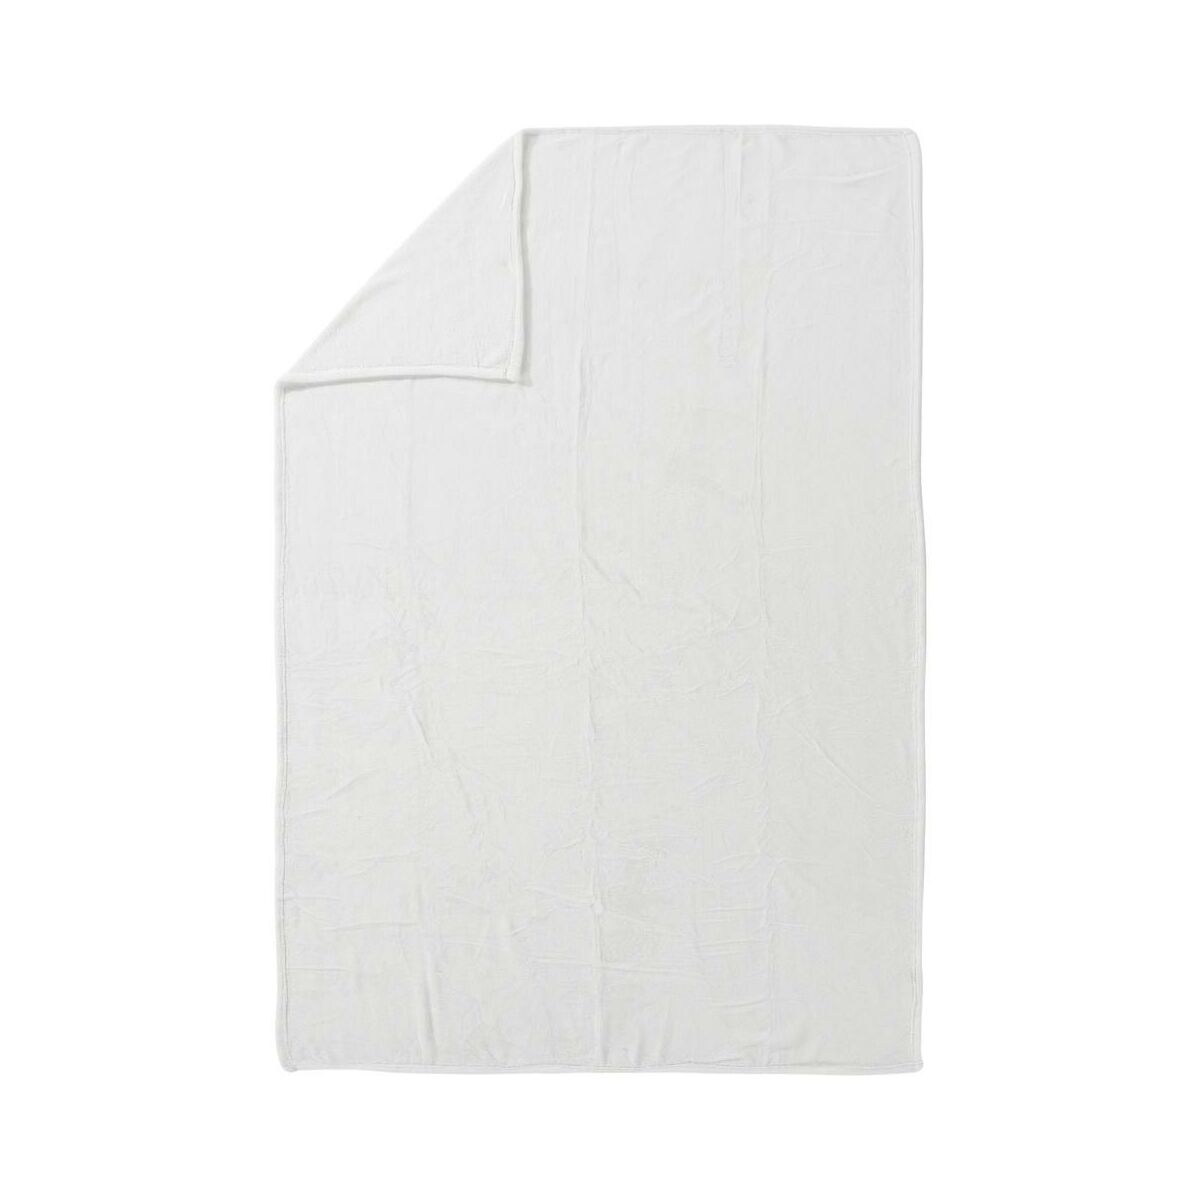 Pled Cocoon biały 130 x 180 cm